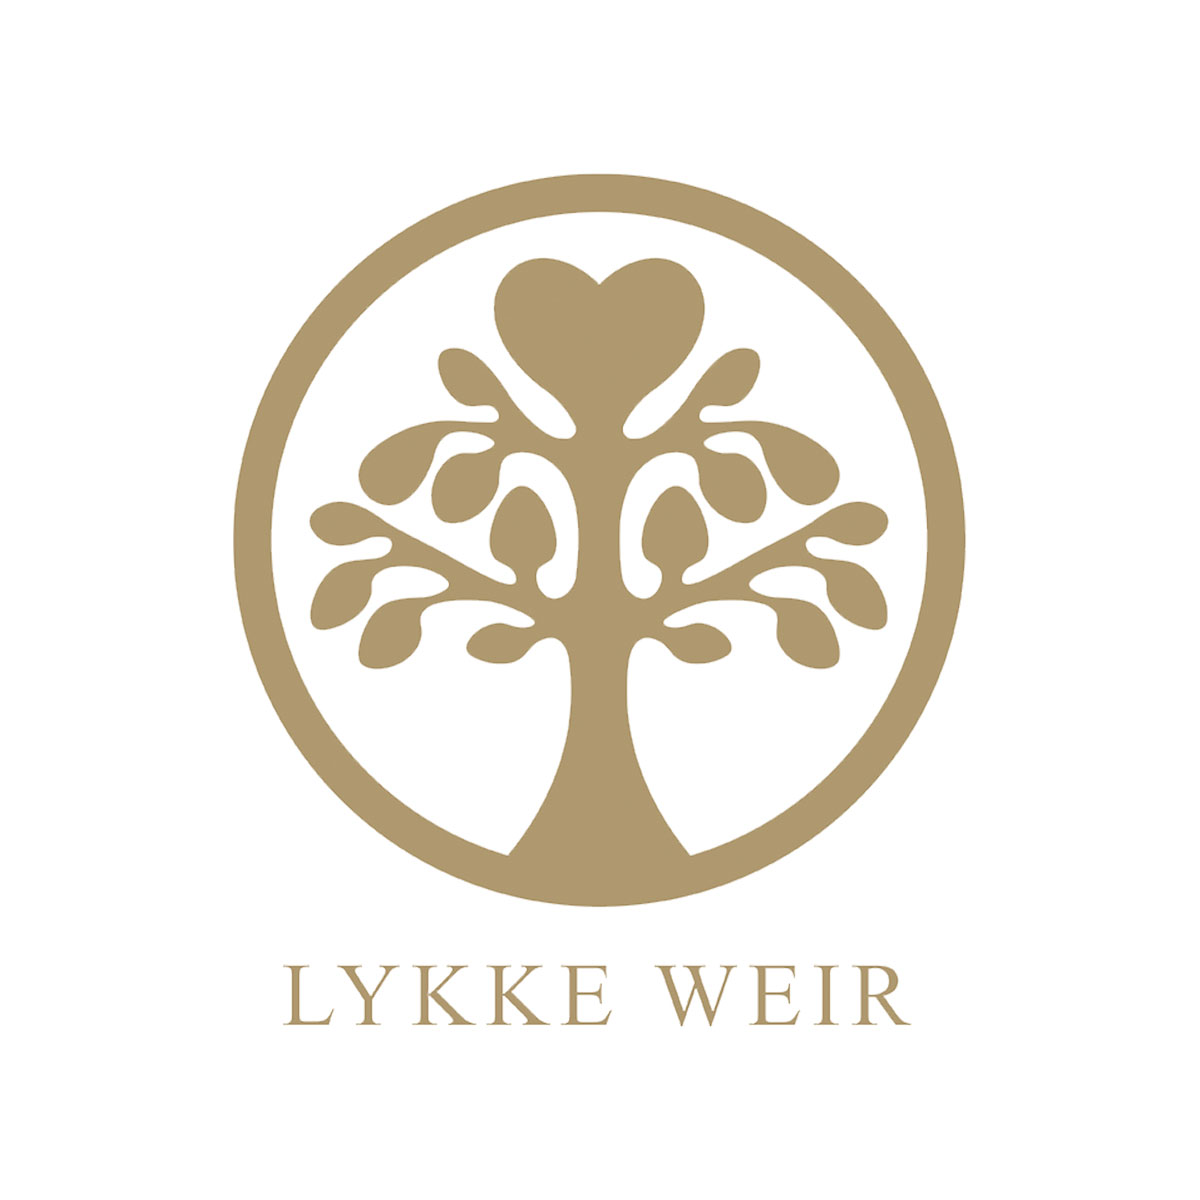 Portfolio med logo for Lykke Weir af freelance marketingkonsulent og freelance marketing konsulent i Randers Marketingsnedkeren